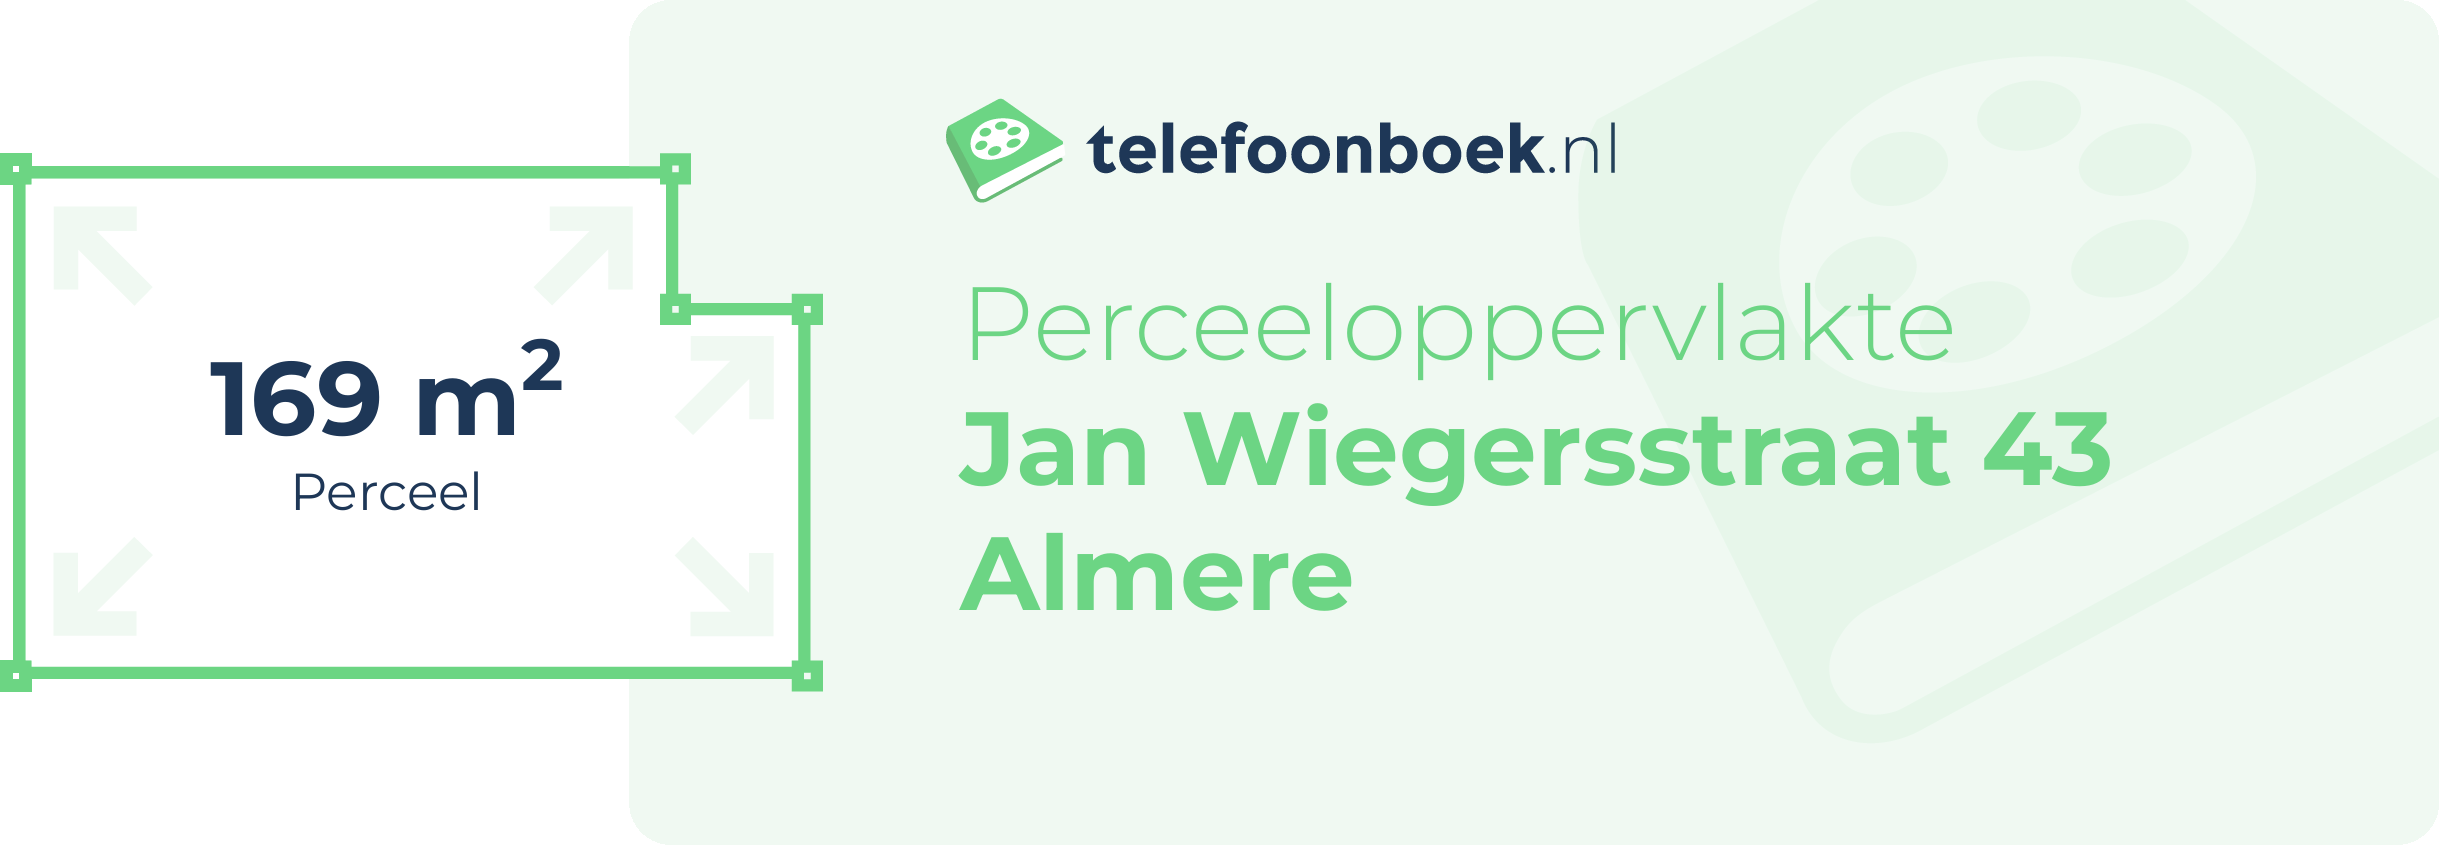 Perceeloppervlakte Jan Wiegersstraat 43 Almere